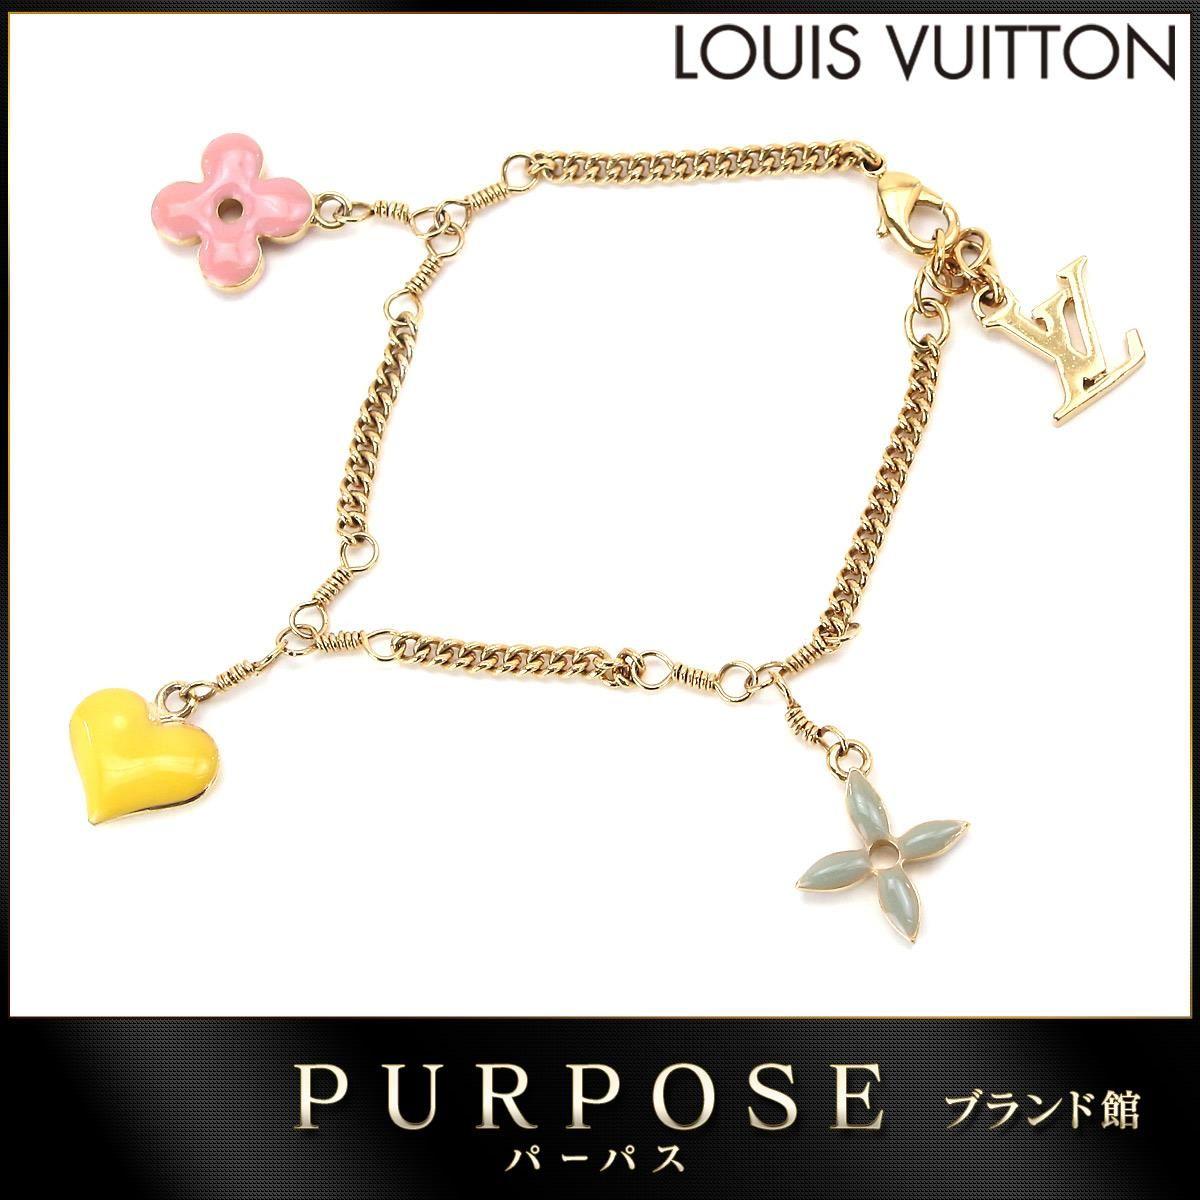 Flower LV Logo - Purpose Inc: Louis Vuitton LOUIS VUITTON suite monogram bracelet LV ...